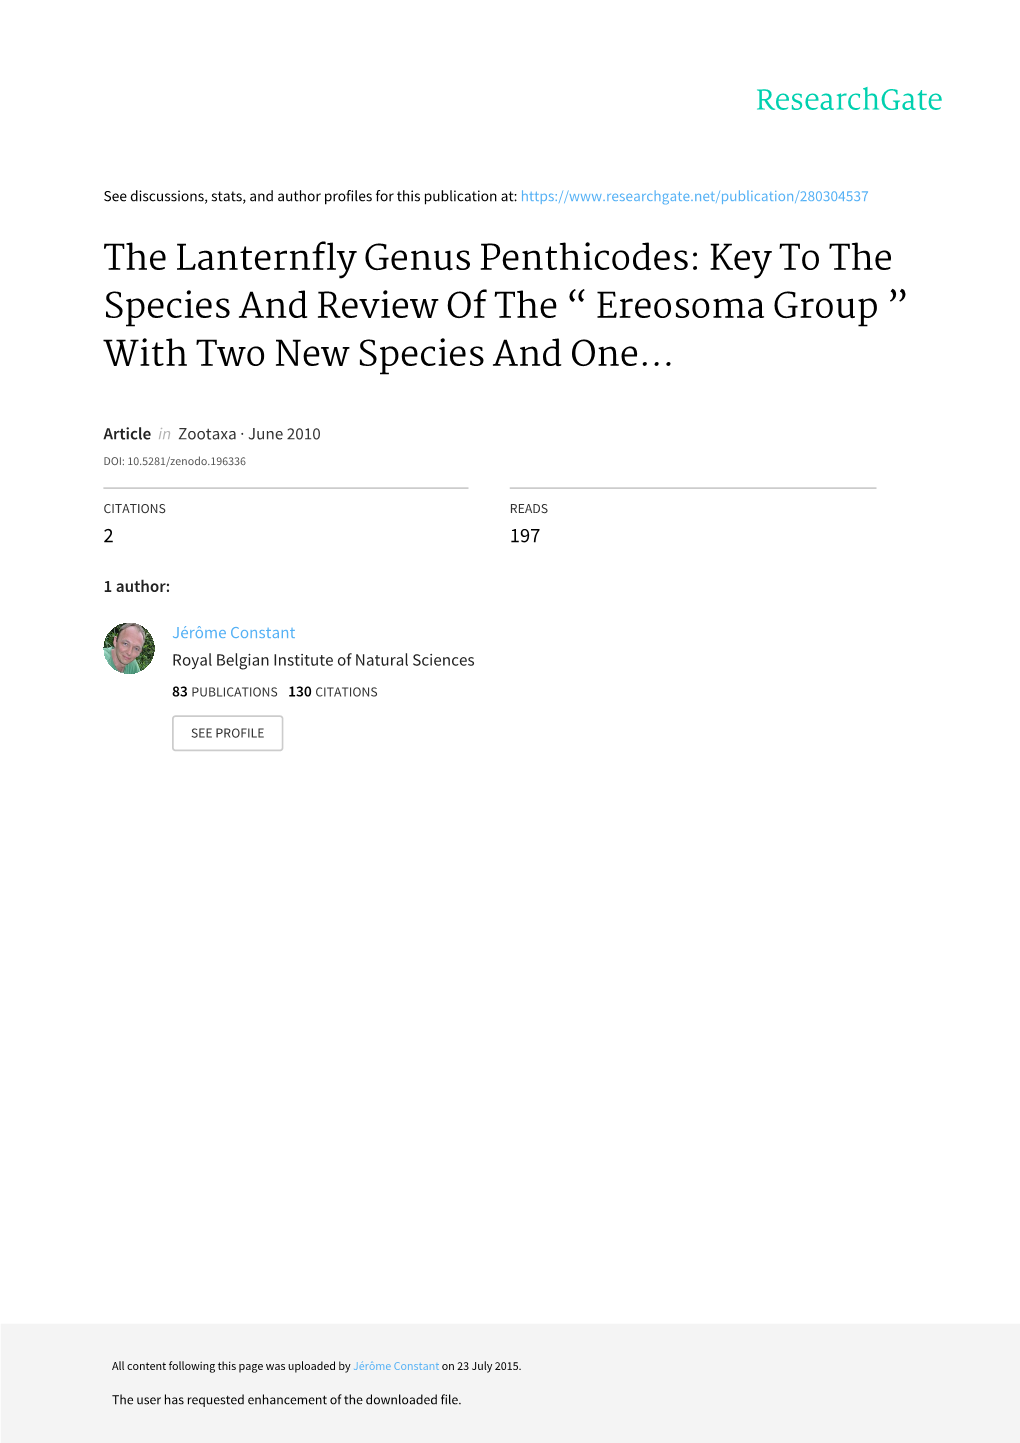 Zootaxa, the Lanternfly Genus Penthicodes